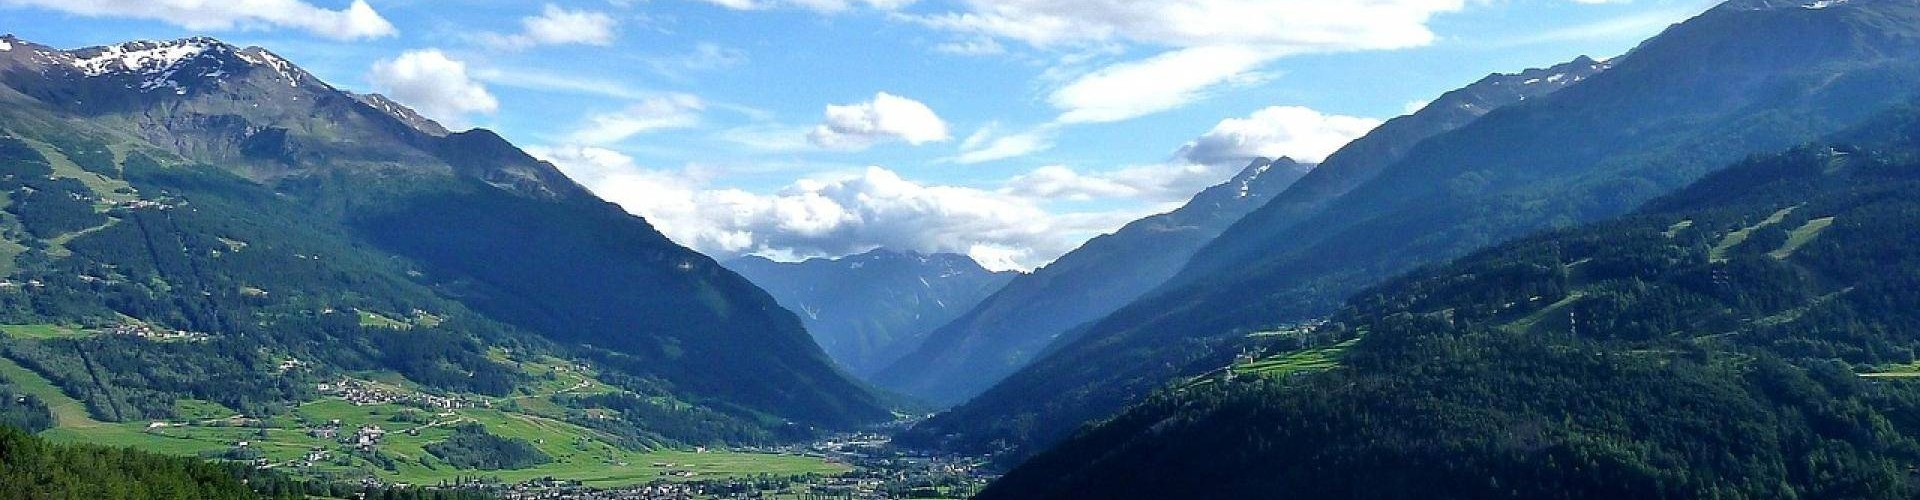 Le specialità culinarie di una valle che si sviluppa tra le Alpi